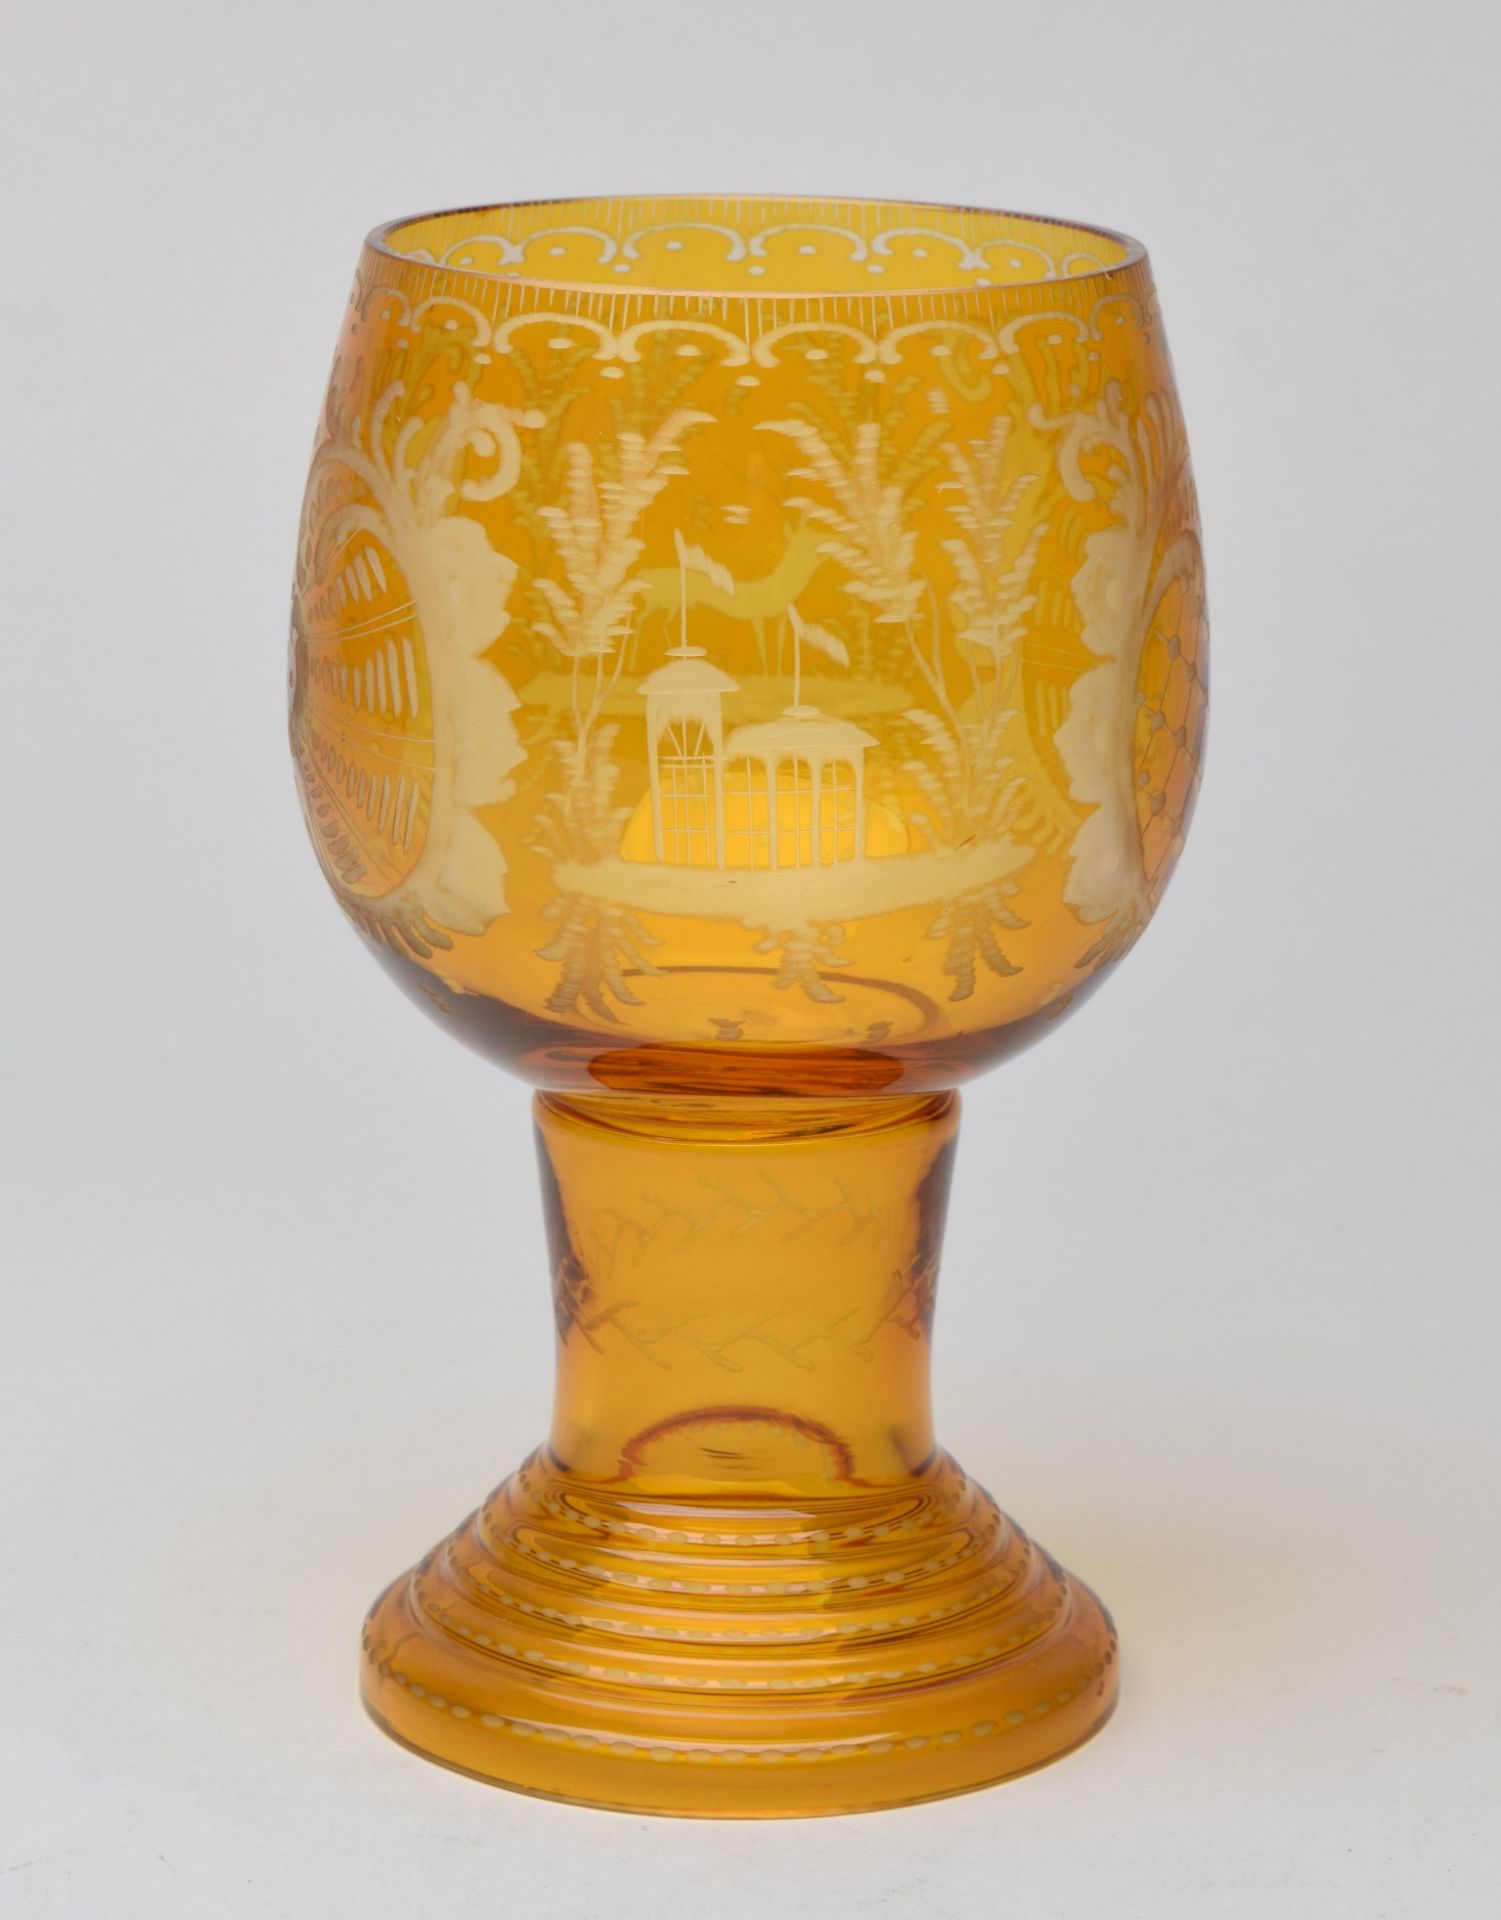 Pokal farbloses Glas goldgelb gebeizt, über getrepptem Hohlfuß breiter Zylinderschaft, gebauchte - Bild 3 aus 3